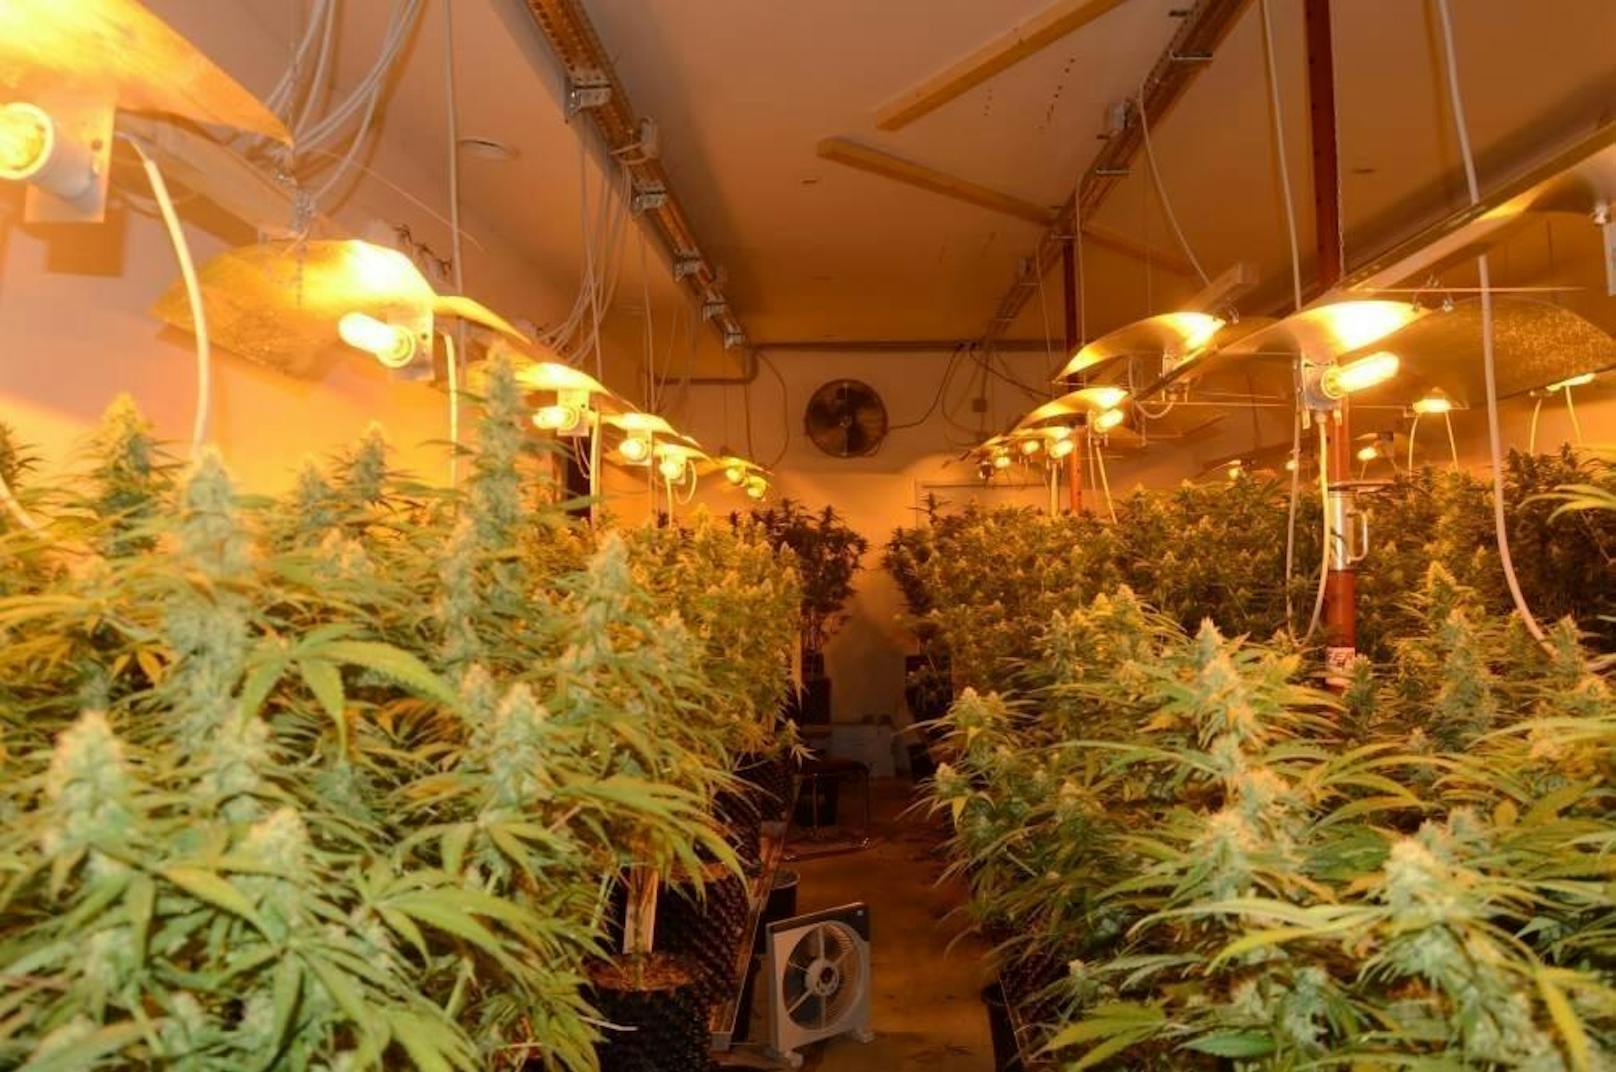 Im Keller eines Wohnhauses in der Redtenbachergasse in Wien-Ottakring stießen die Beamten auf eine Cannabisplantage